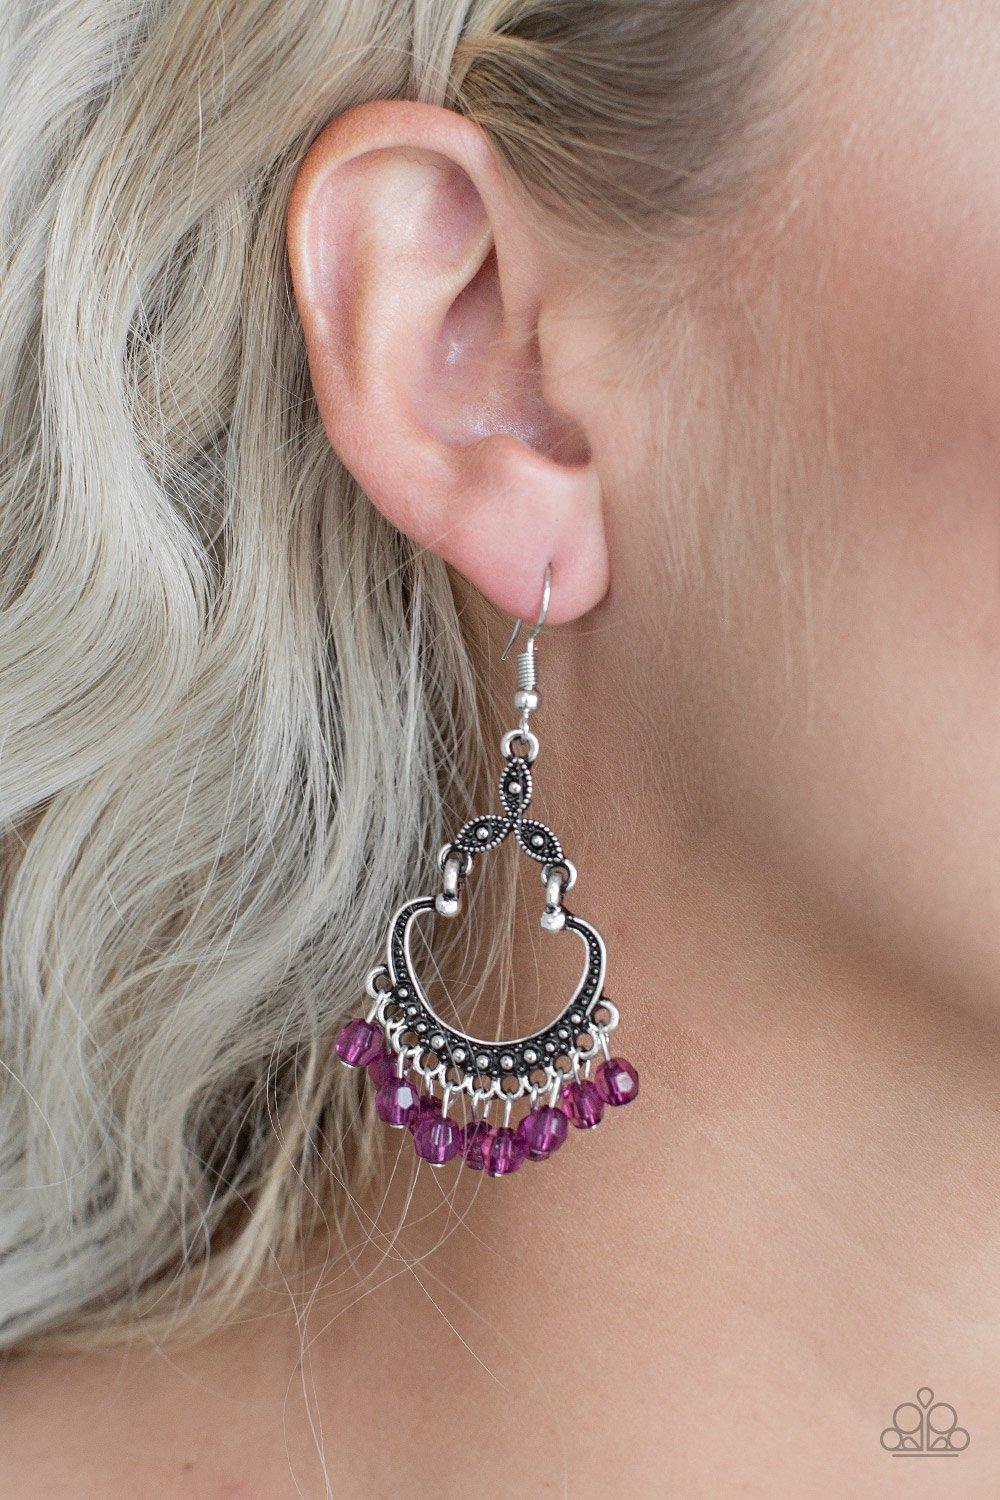 Babe Alert Purple Earrings - Jewelry By Bretta - Jewelry by Bretta